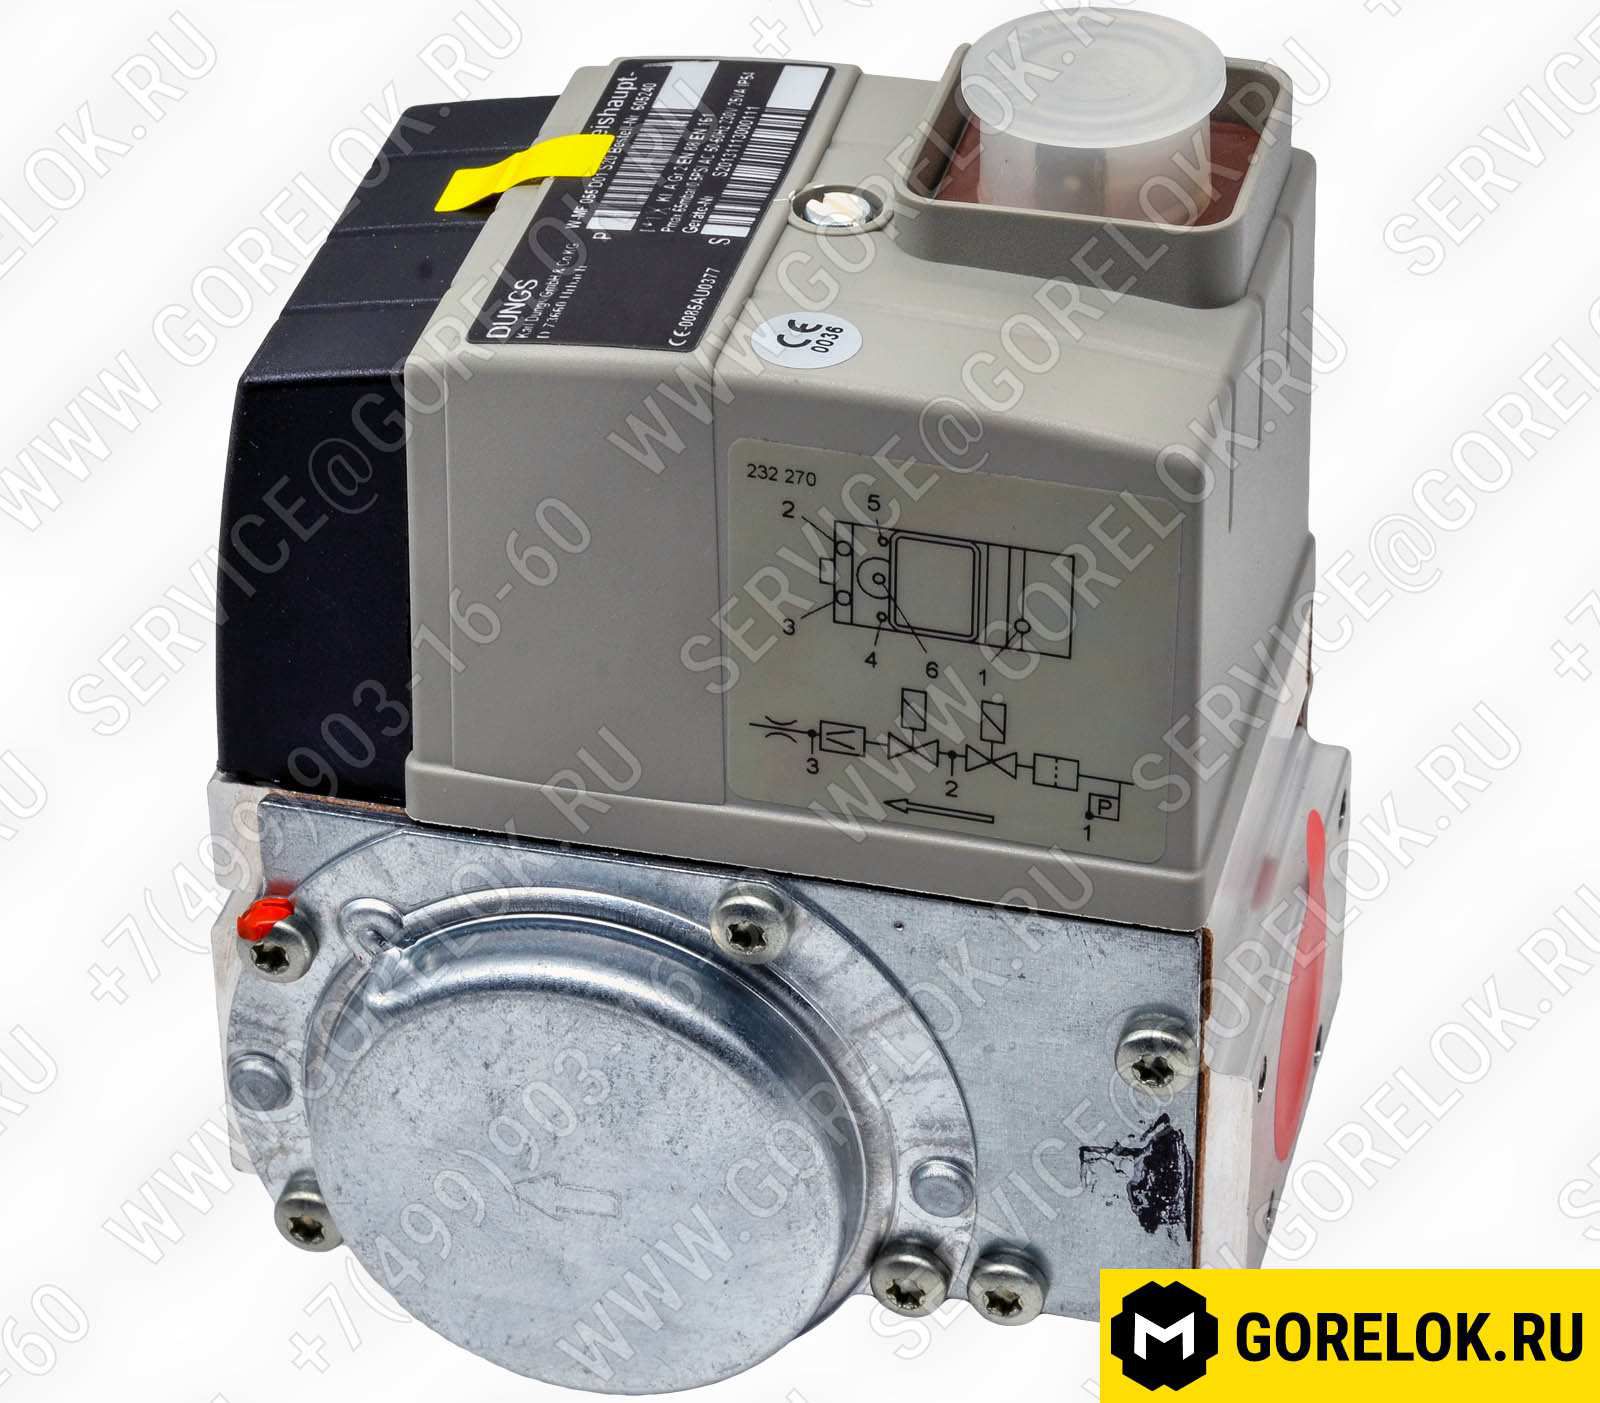 We605-2409 Газовые компоненты: Кабель газового клапана 1850 мм